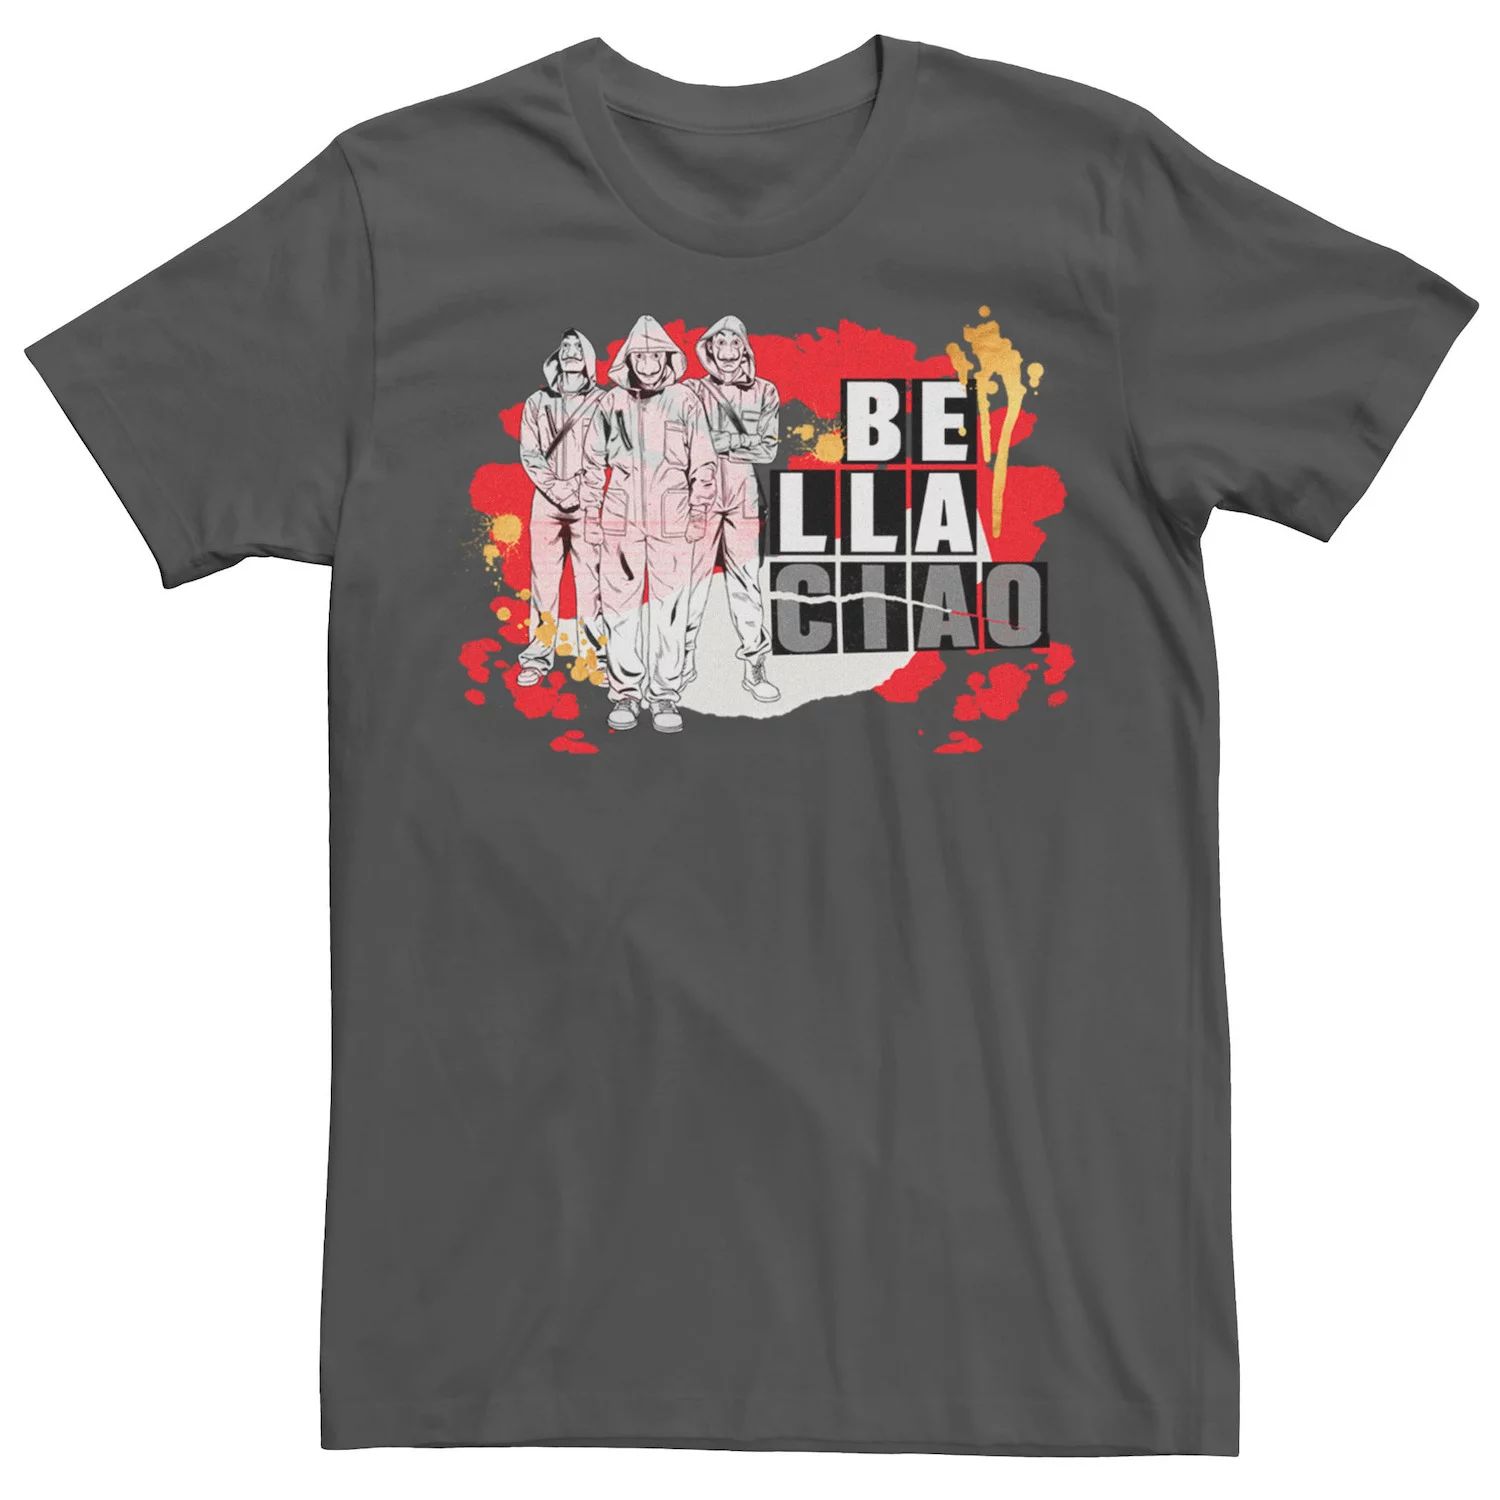 Мужская футболка Netflix La Casa De Papel Bella Ciao с брызгами краски Licensed Character